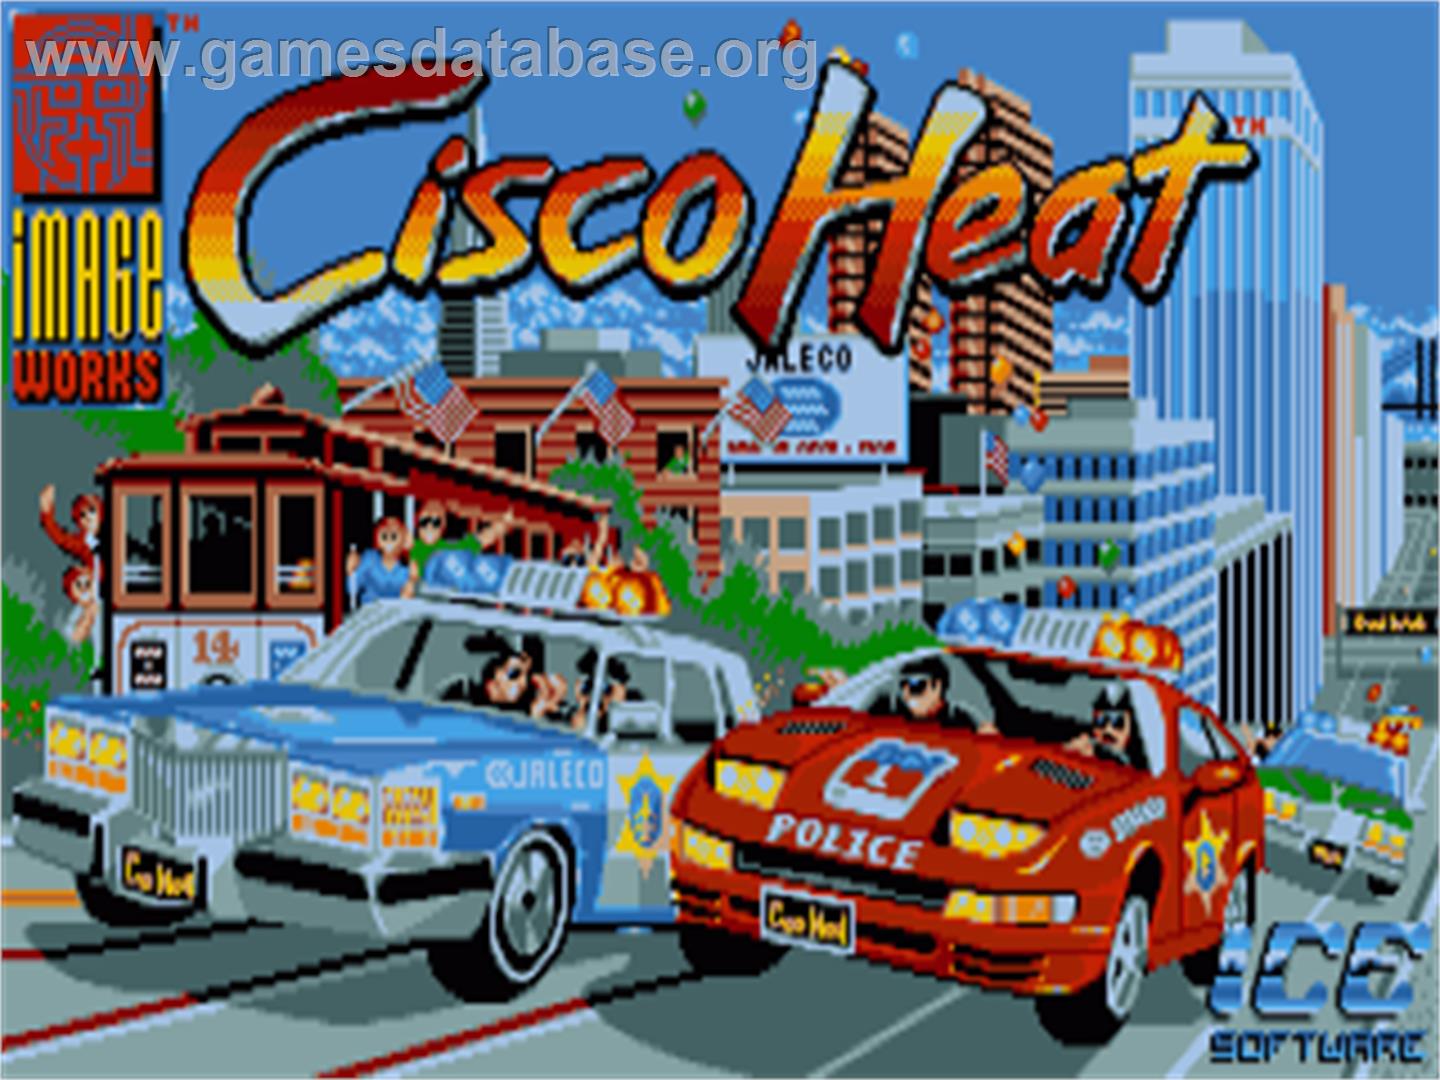 Cisco Heat: All American Police Car Race - Commodore Amiga - Artwork - Title Screen